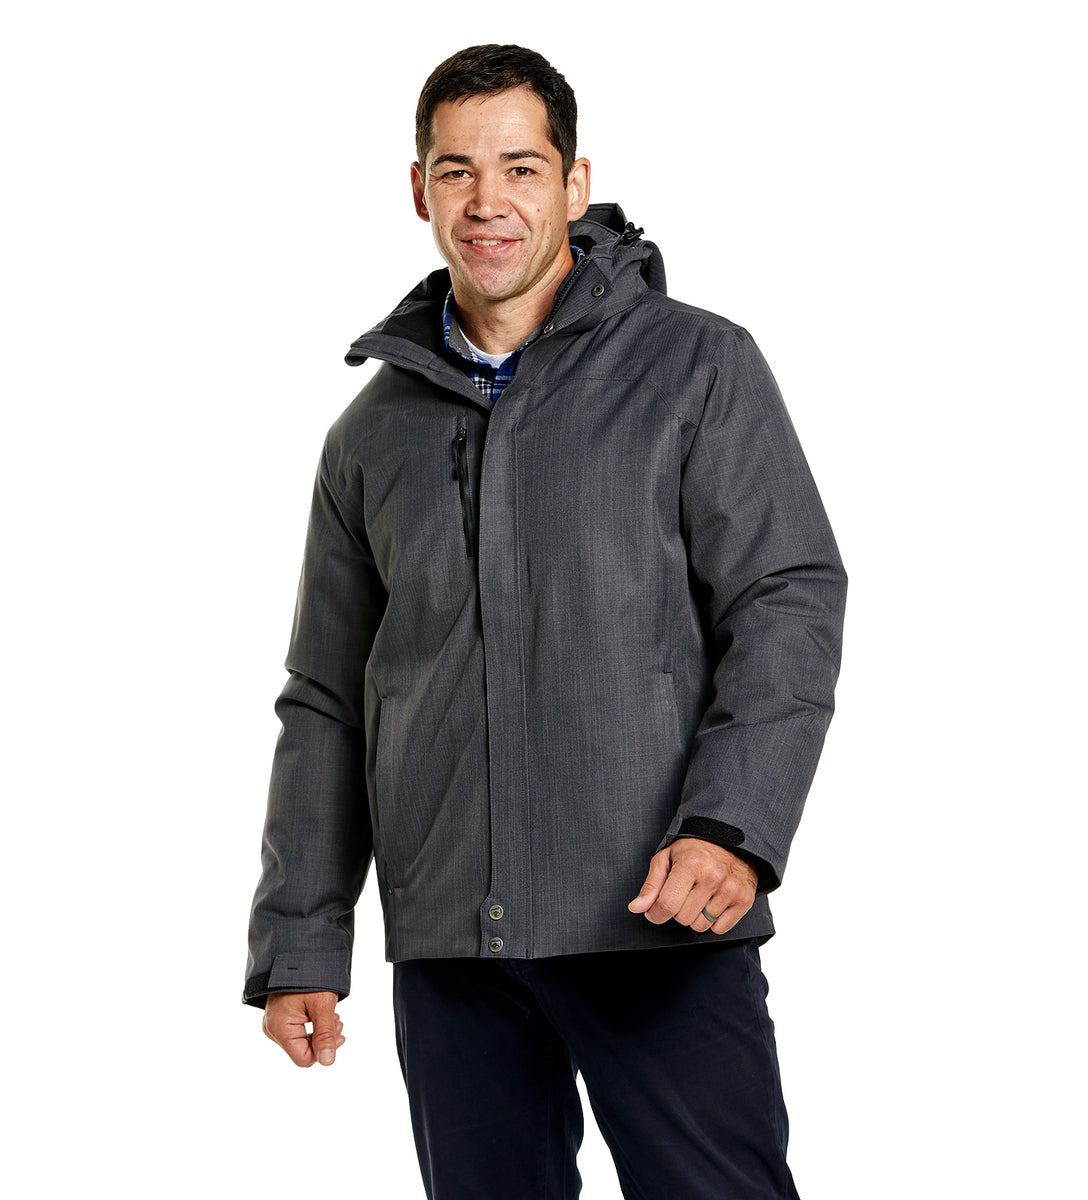 Men's Defender Winter Jacket | Storm Creek Distributor Site